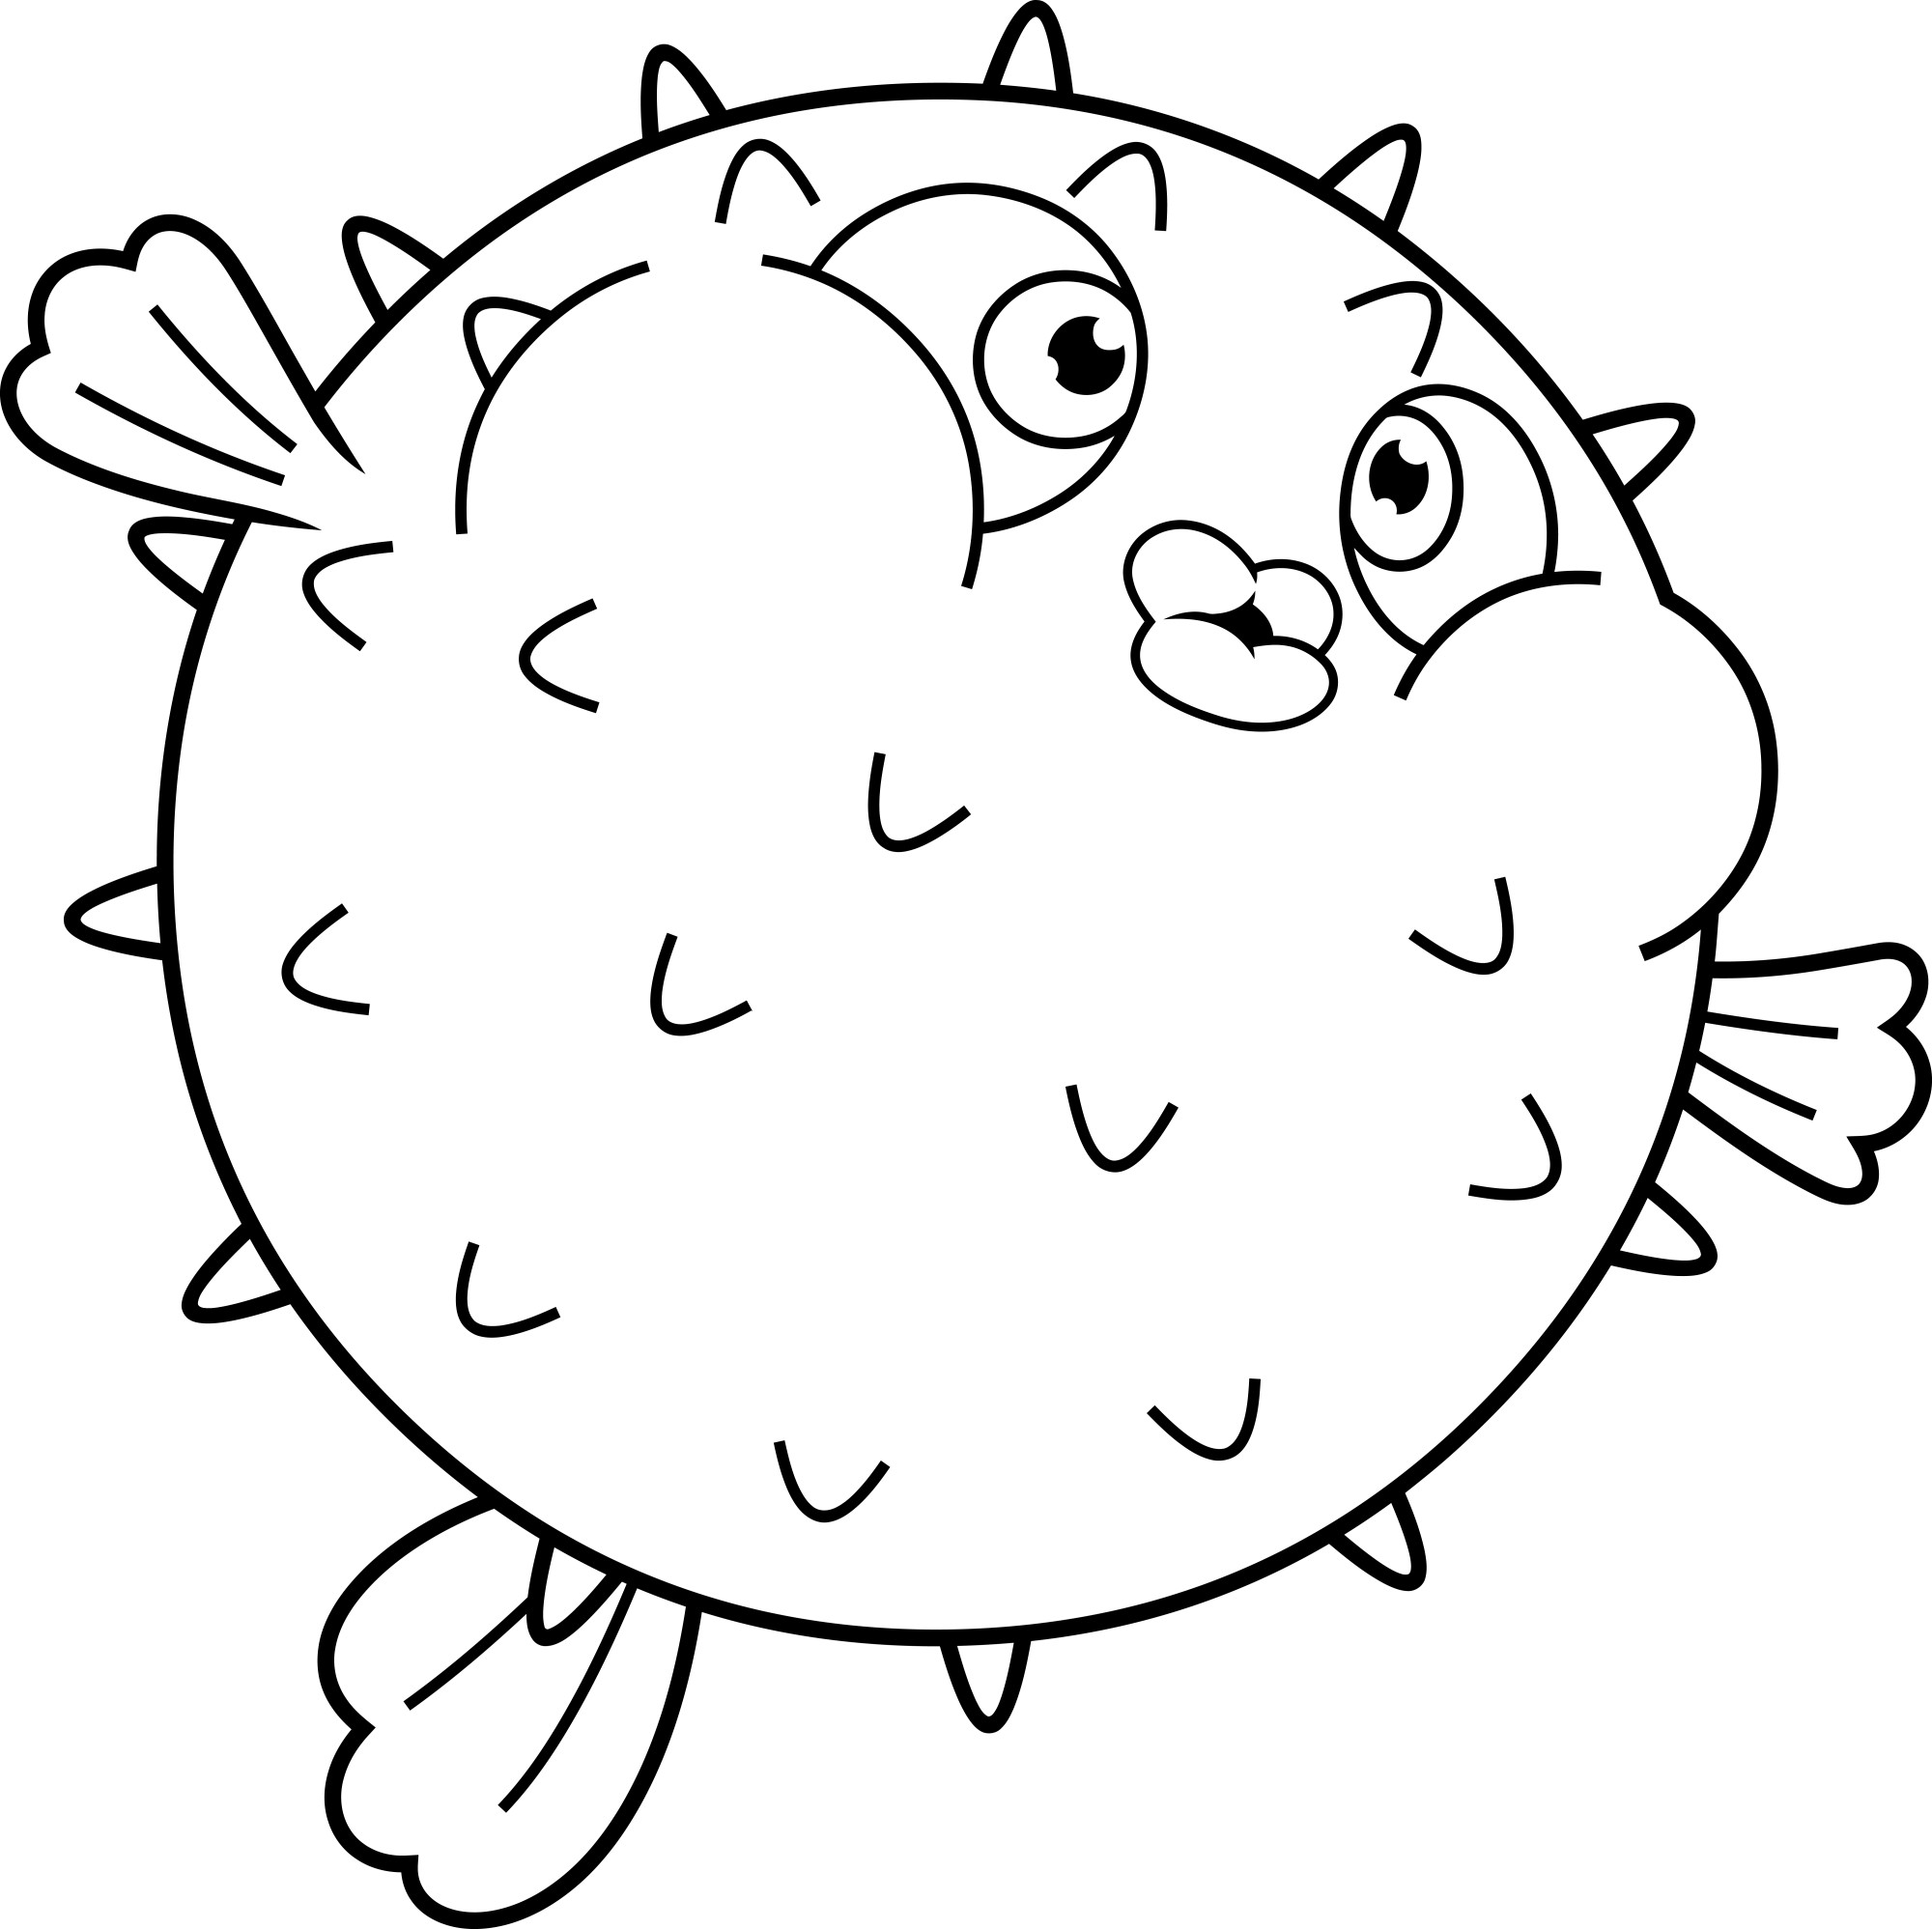 Раскраска для детей: рыба фугу с большими глазами